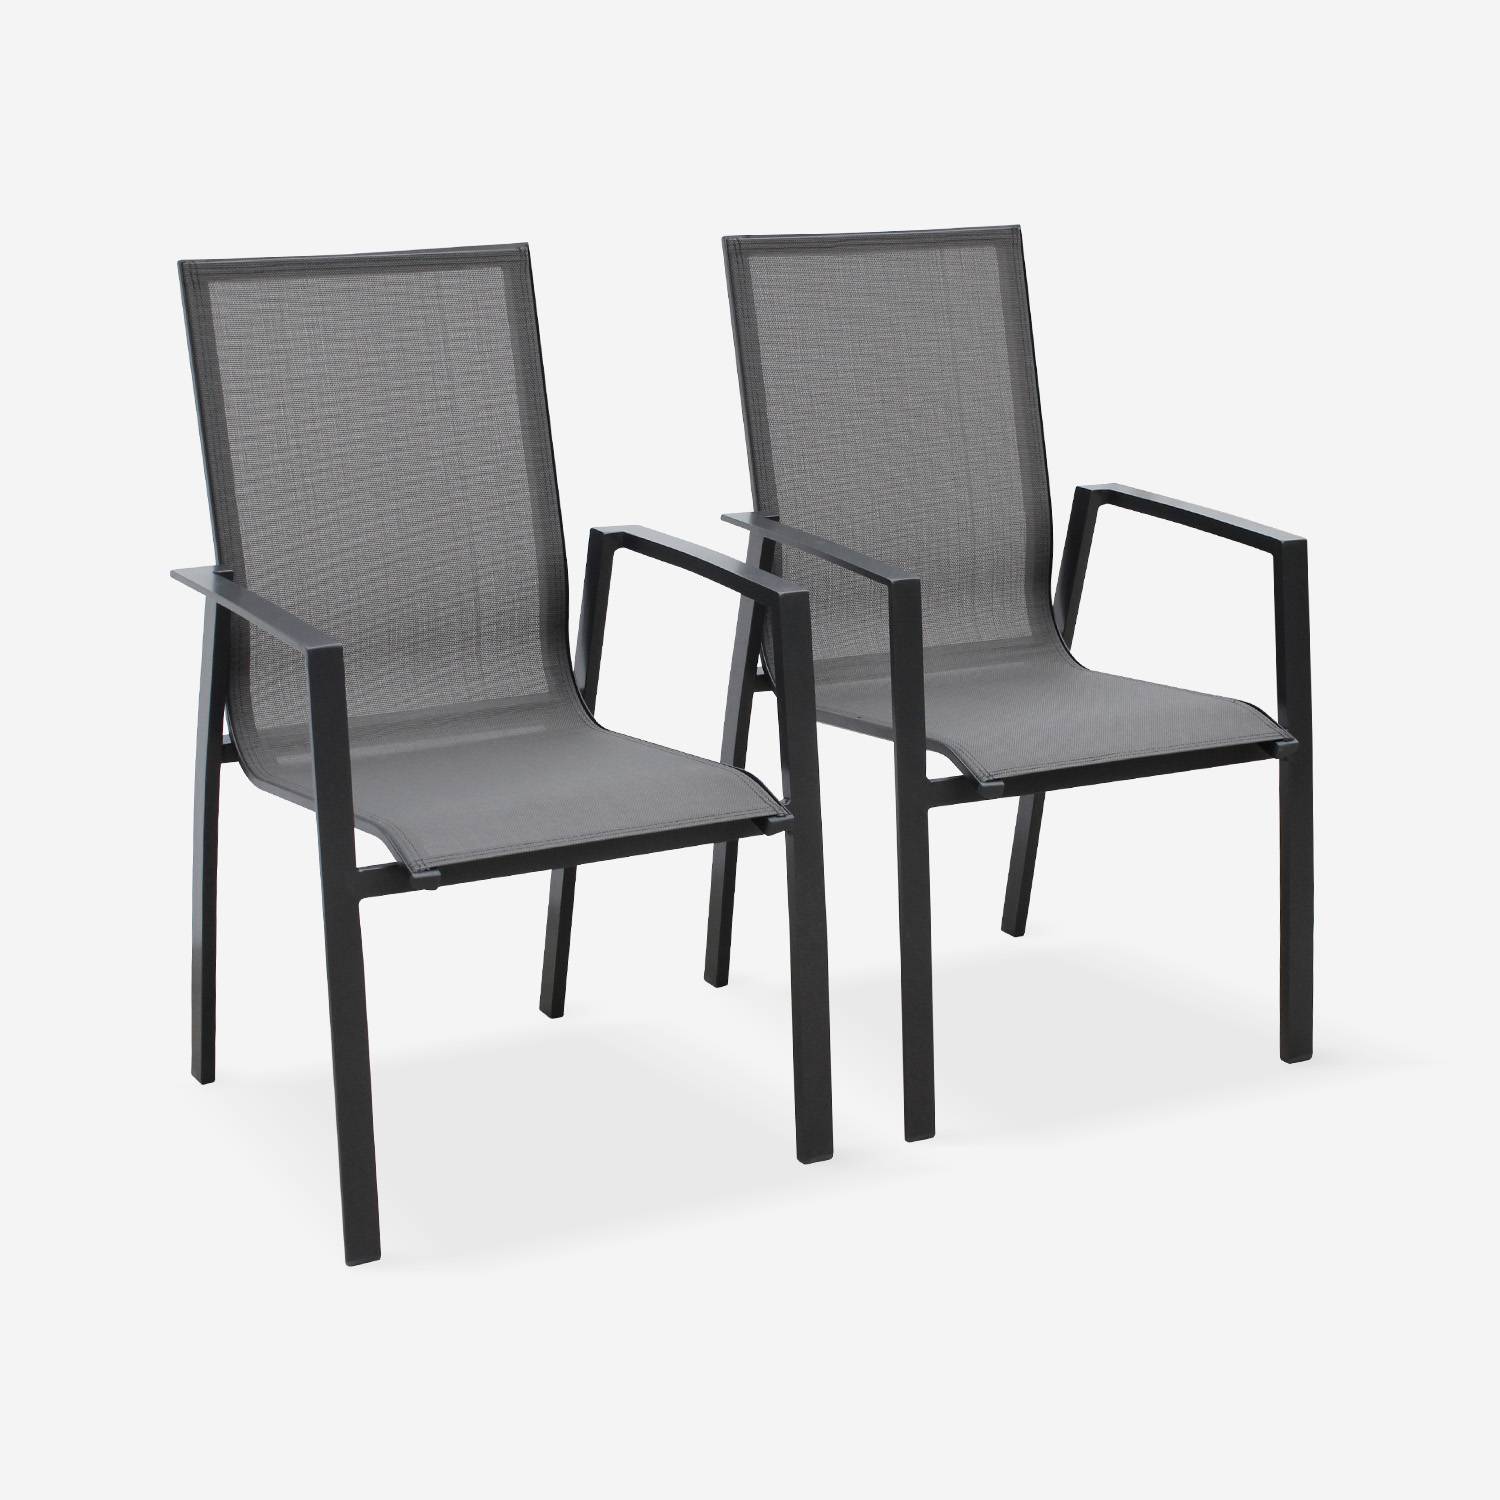 Coppia di sedie Washington Antracite/ Grigio scuro in alluminio antracite e textilene colore grigio scuro, impilabili,sweeek,Photo1